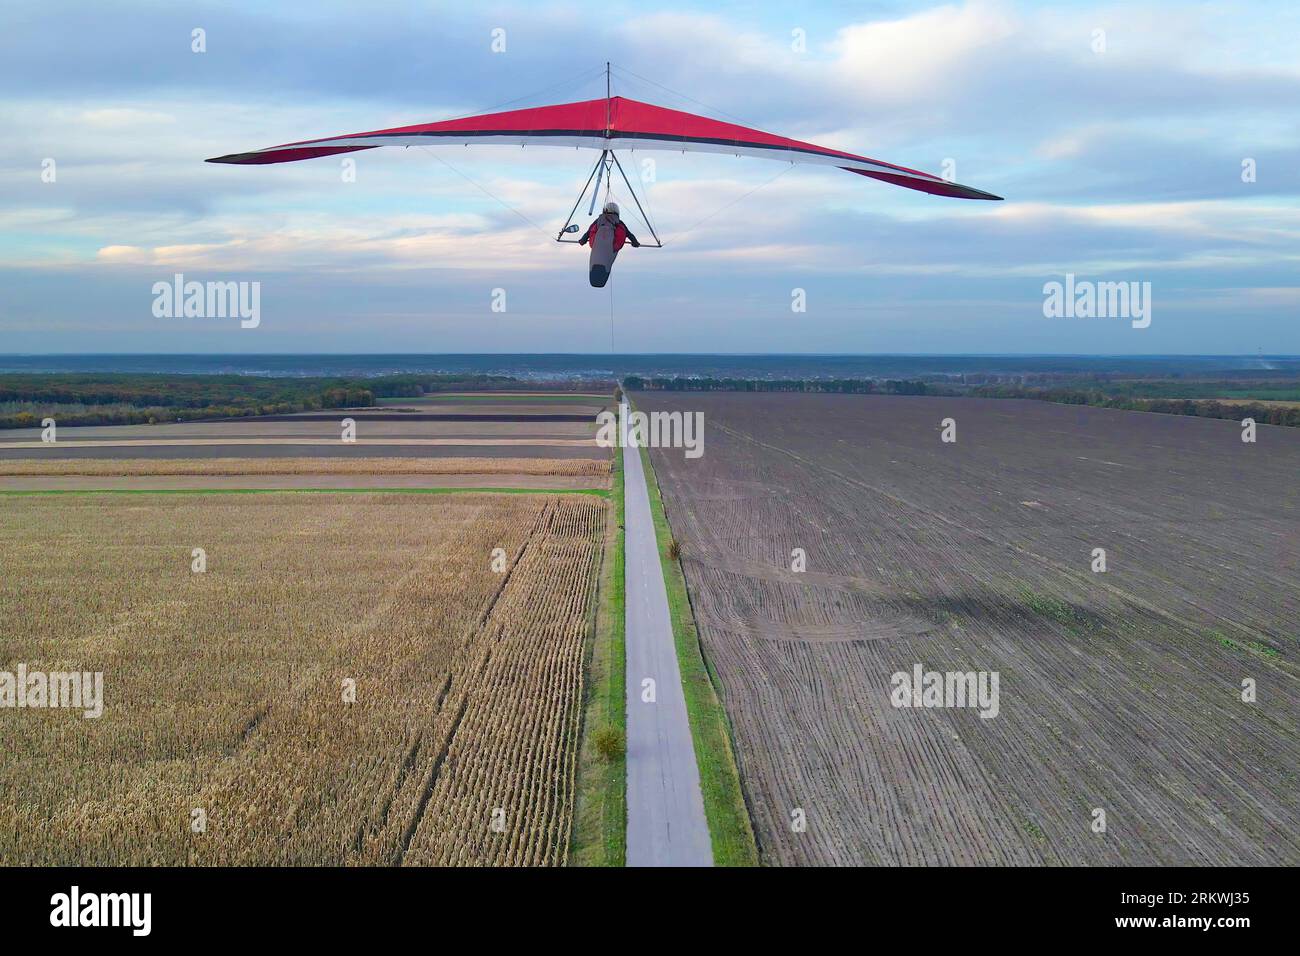 L'aile de deltaplane rouge vole au-dessus des champs agricoles cultivés. Banque D'Images